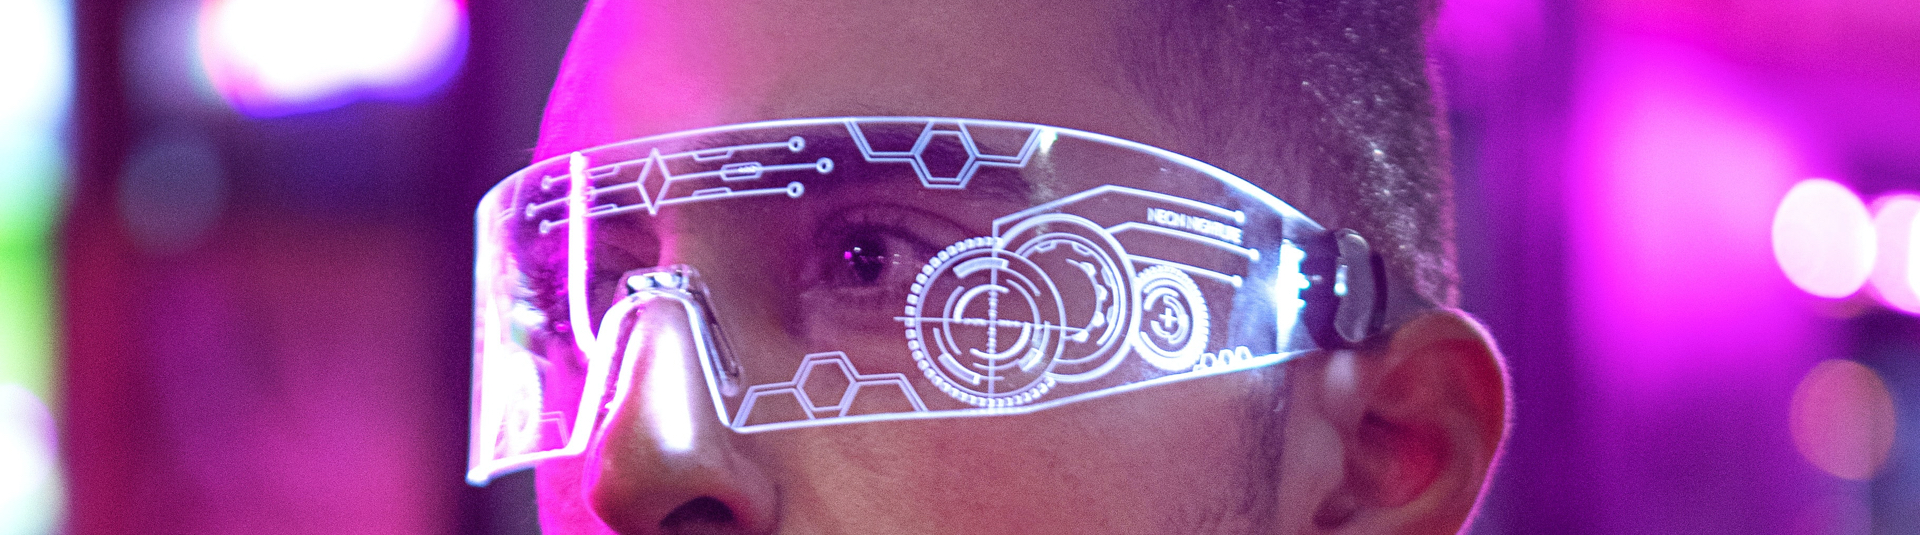 Bannière de l'article "WnG Solutions teste les Google Glass !"